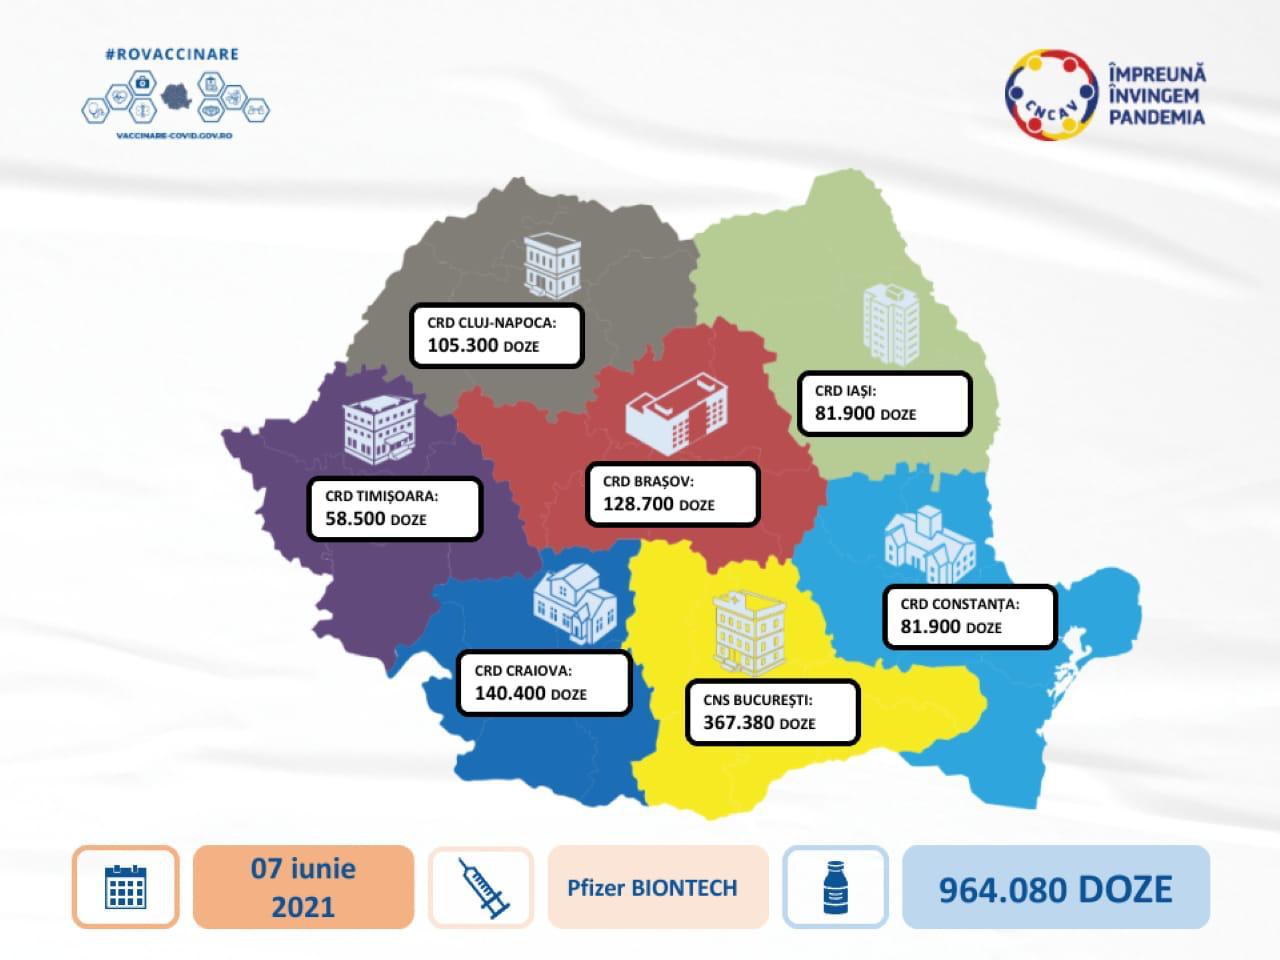 964.080 XNUMX doses du vaccin pfizer biontech sont arrivées en Roumanie pour être distribuées